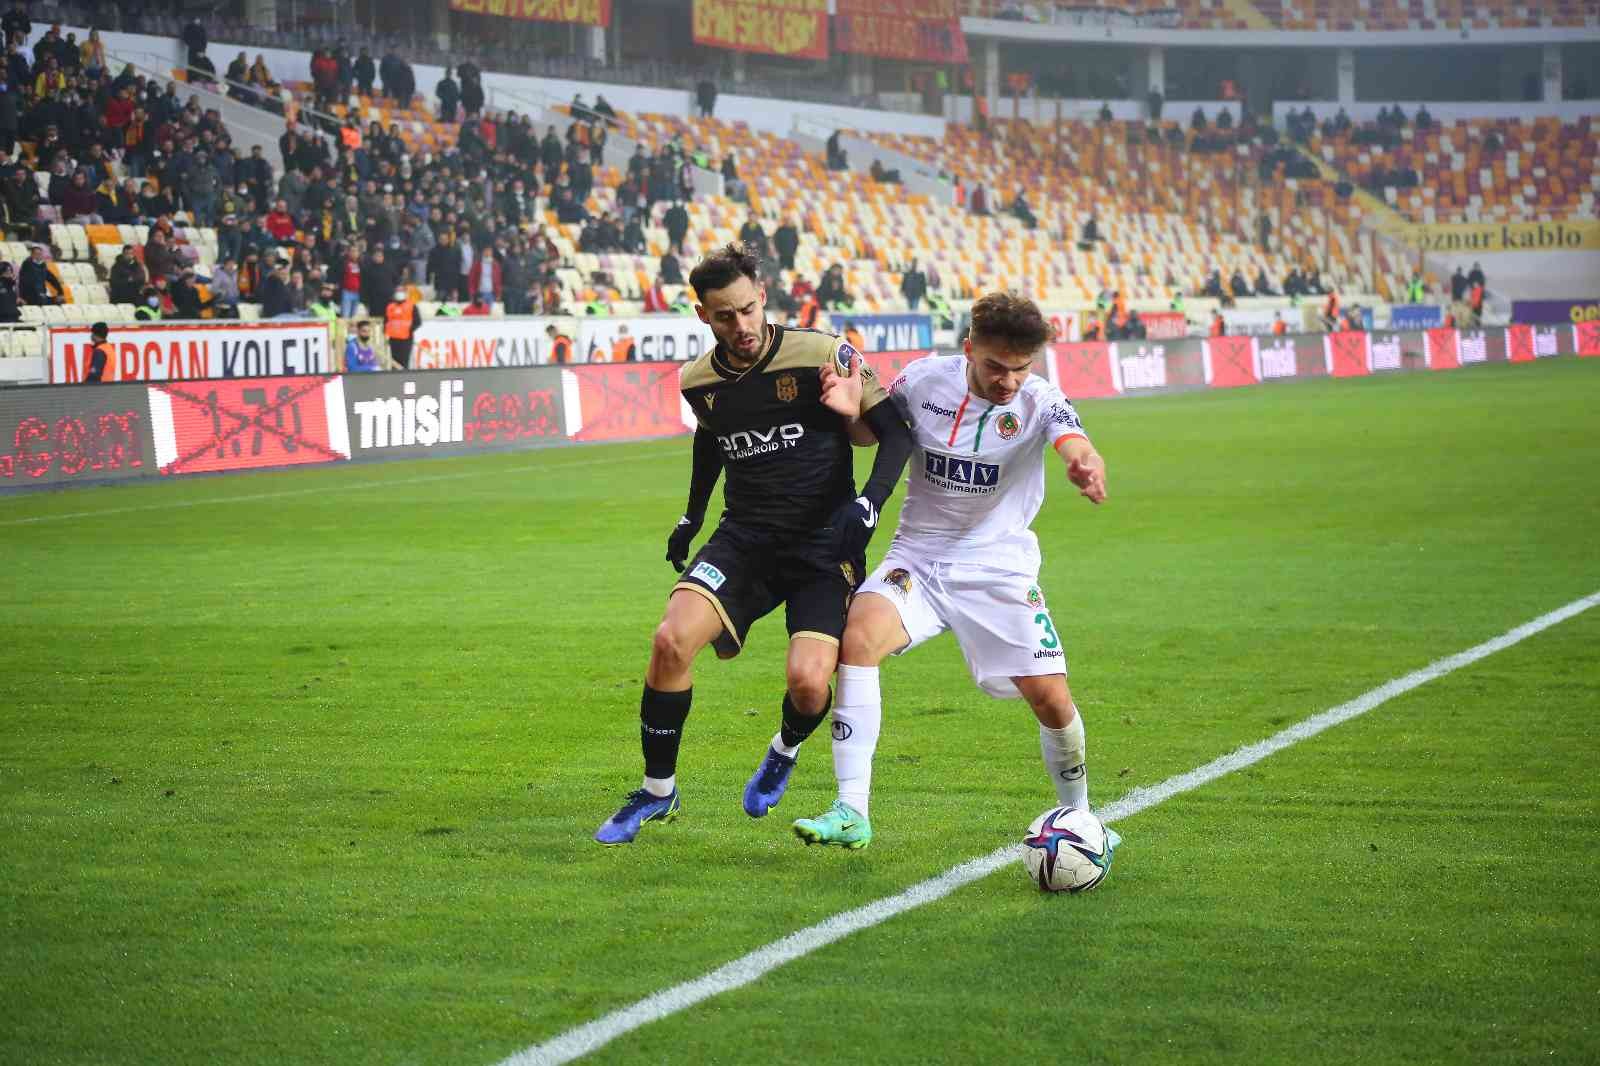 Süper Toto Süper Lig: Yeni Malatyaspor: 2 - Alanyaspor: 3 (ilk yarı) #malatya